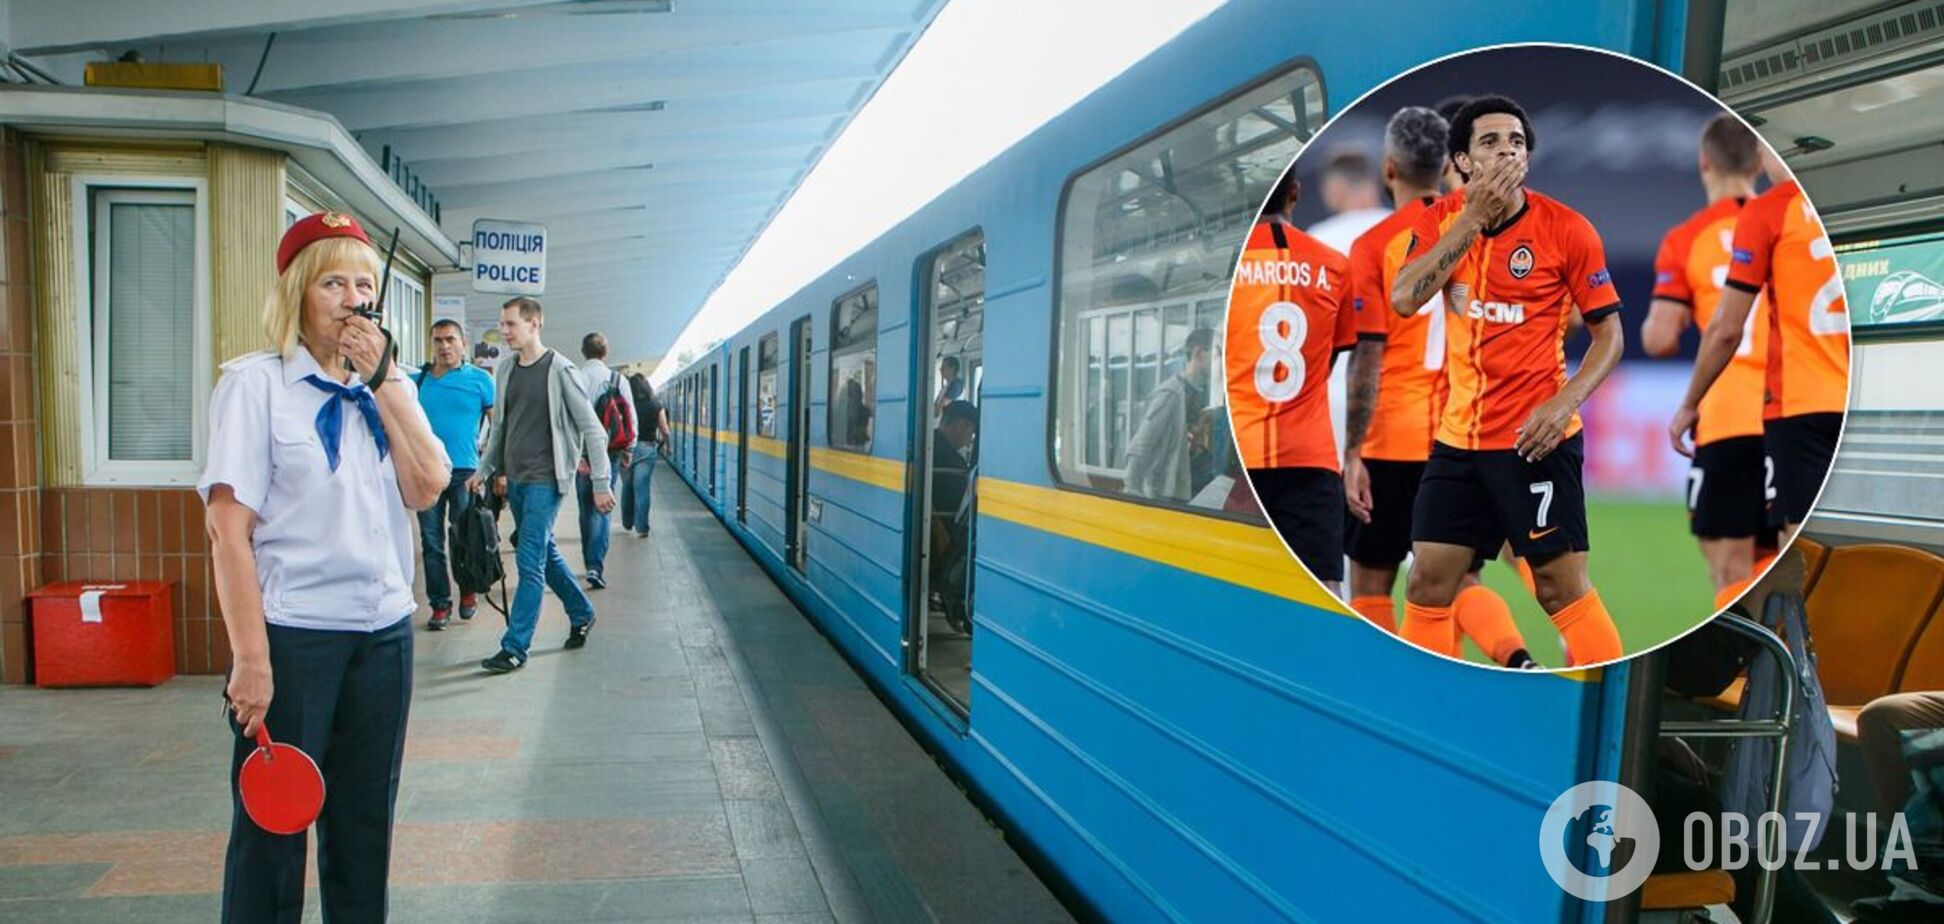 Перед и после матча 'Шахтер' - 'Интер' на нескольких станциях киевского метро могут быть ограничения на вход